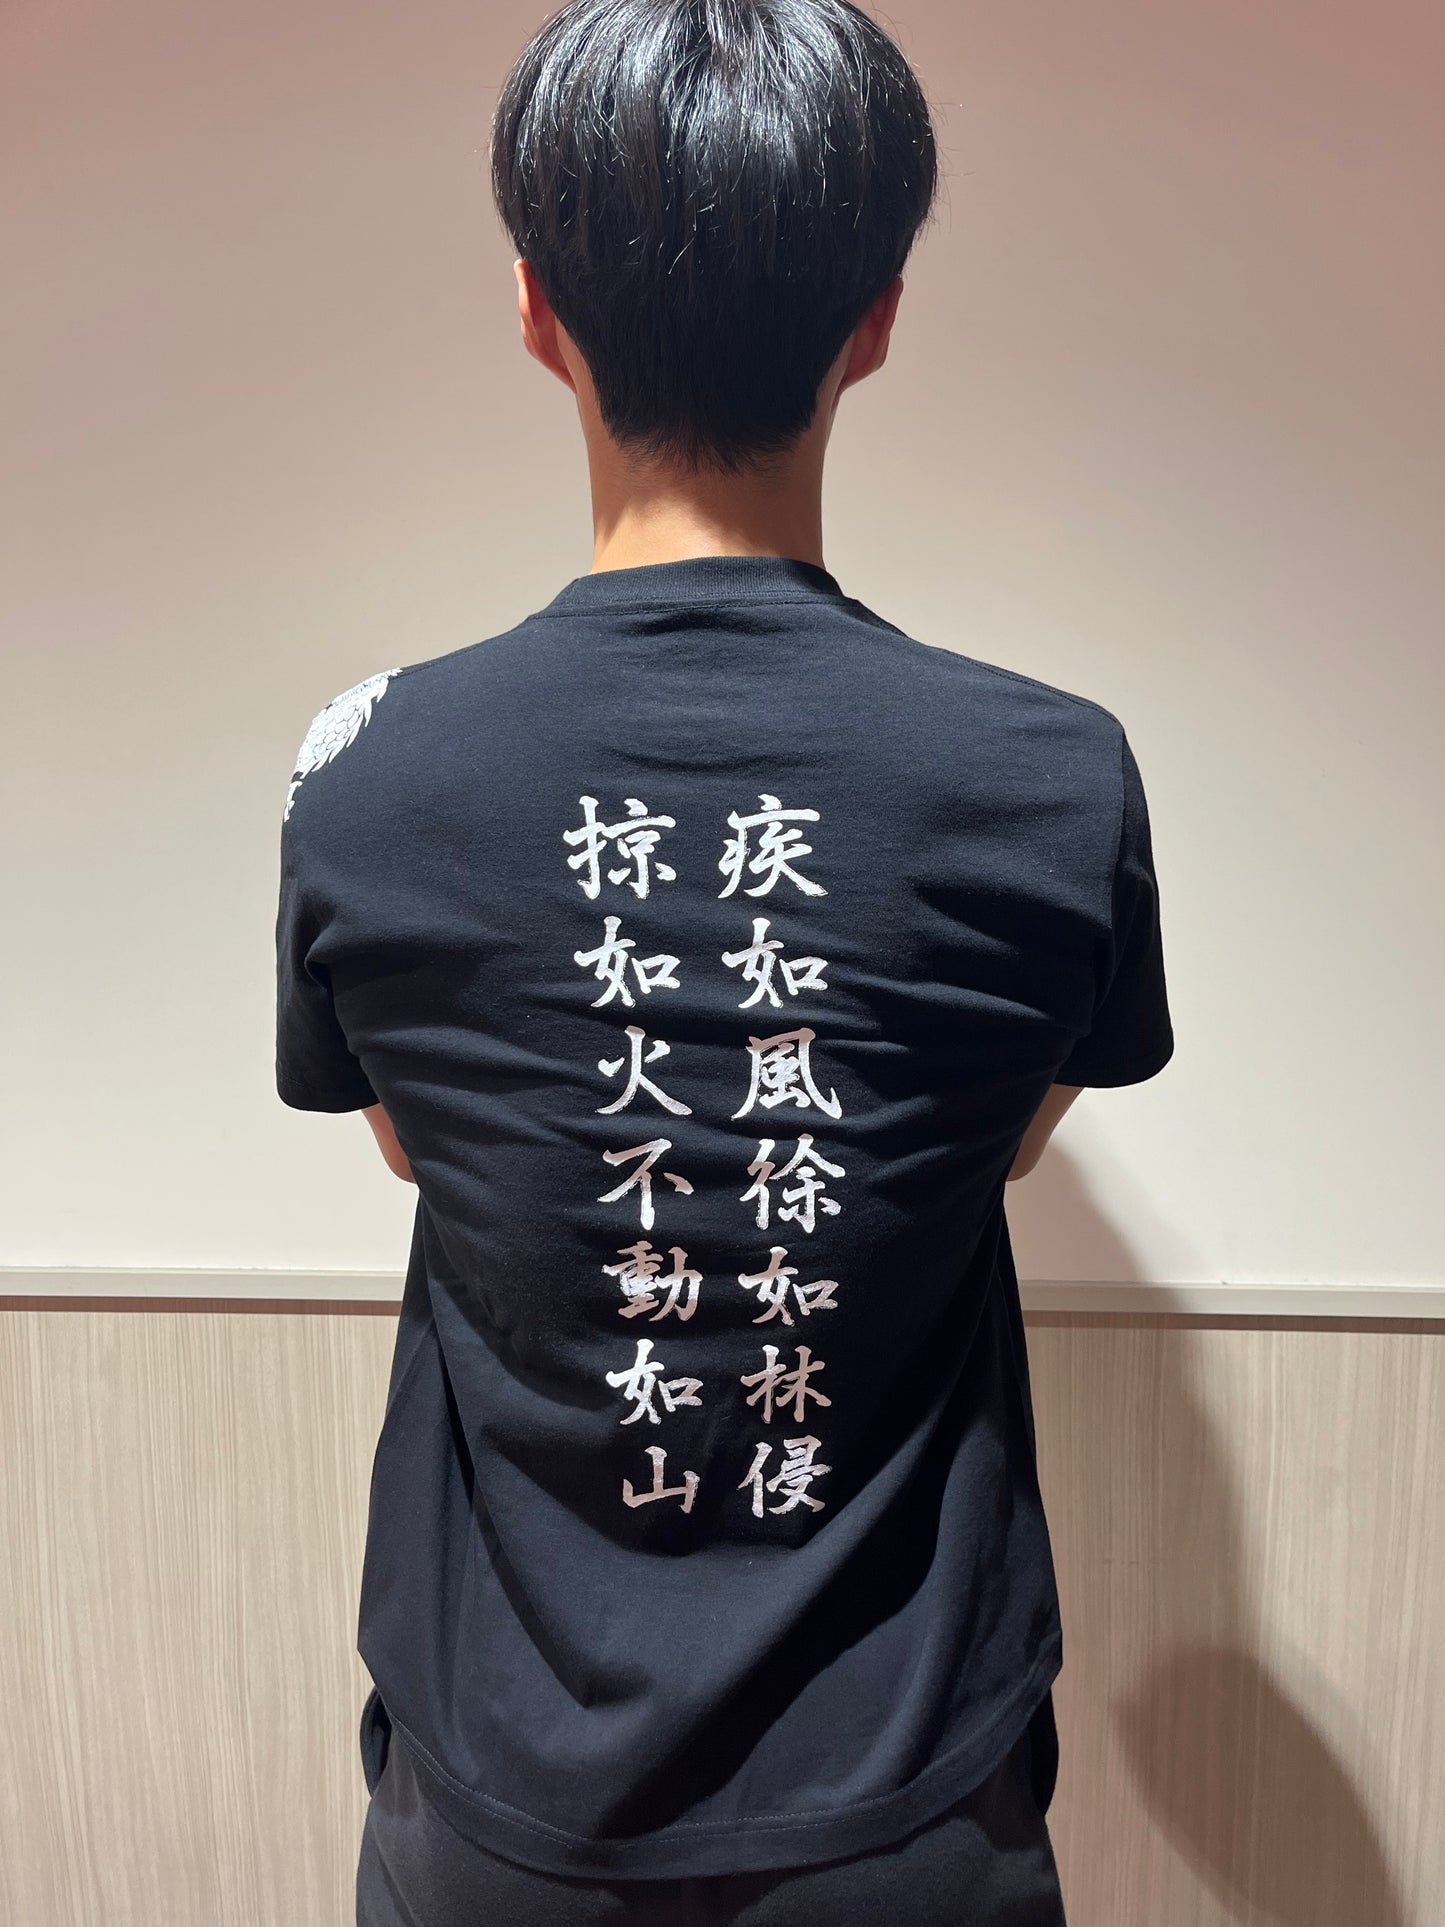 山岸秀匡＆パワーハウスジム コラボロングスリーブTシャツ「風林火山」